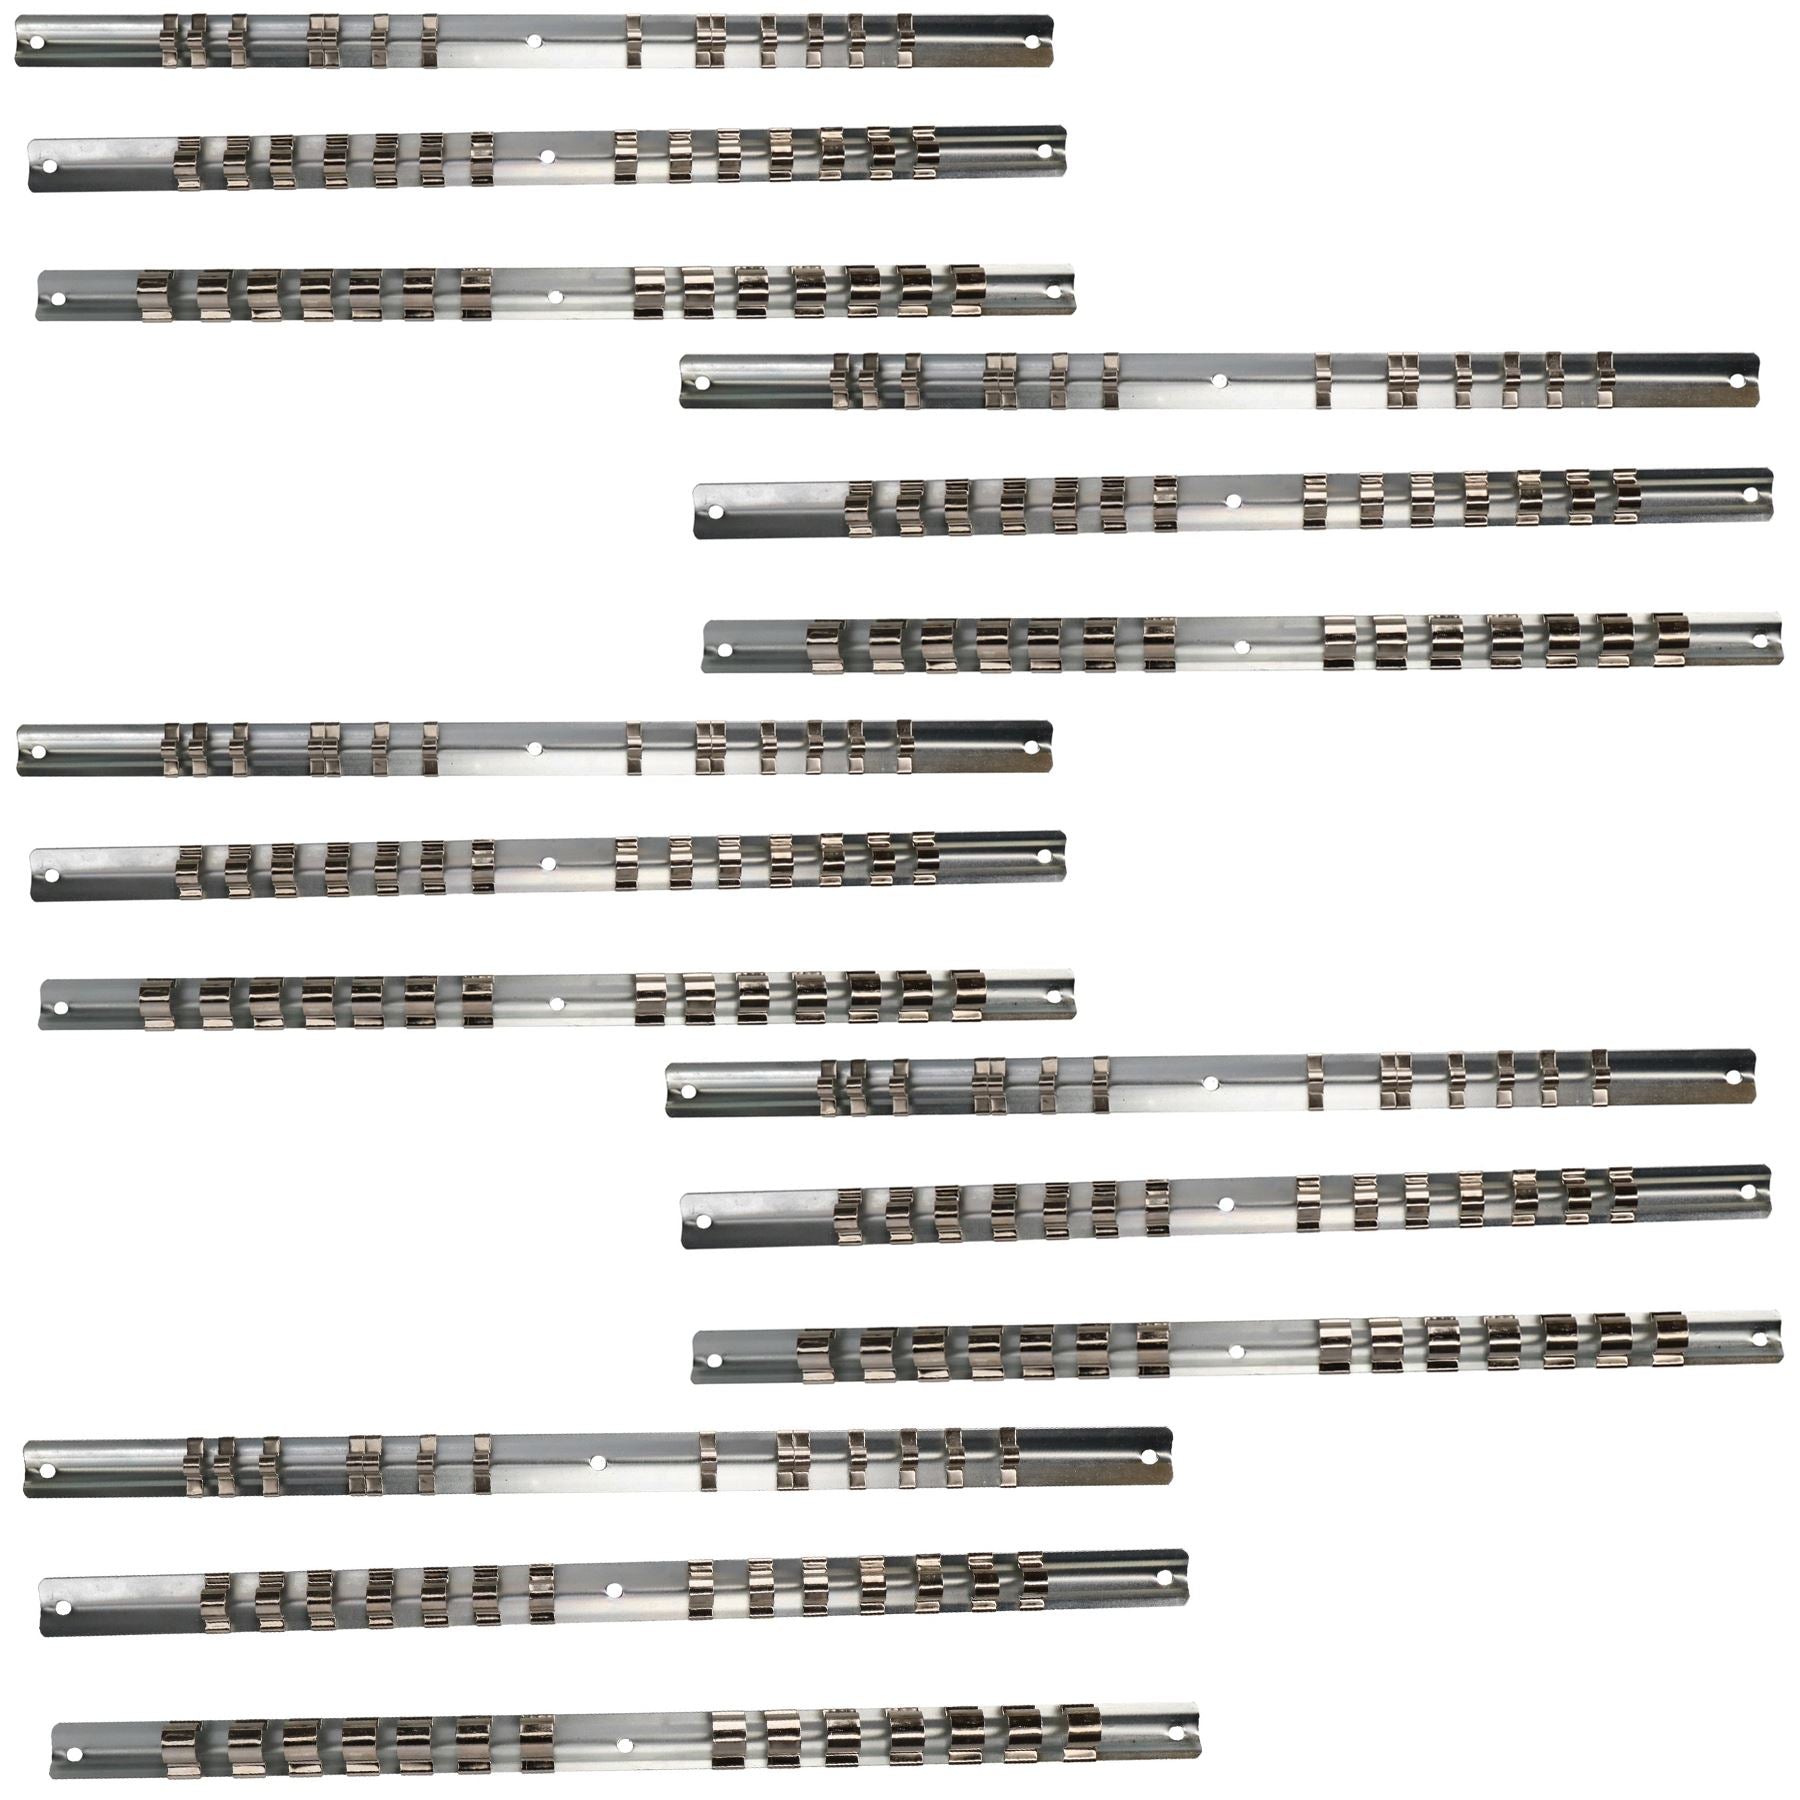 15pc Socket Storage Holder Organiser Rails For 1/4, 3/8, 1/2 Sockets 210 Clips